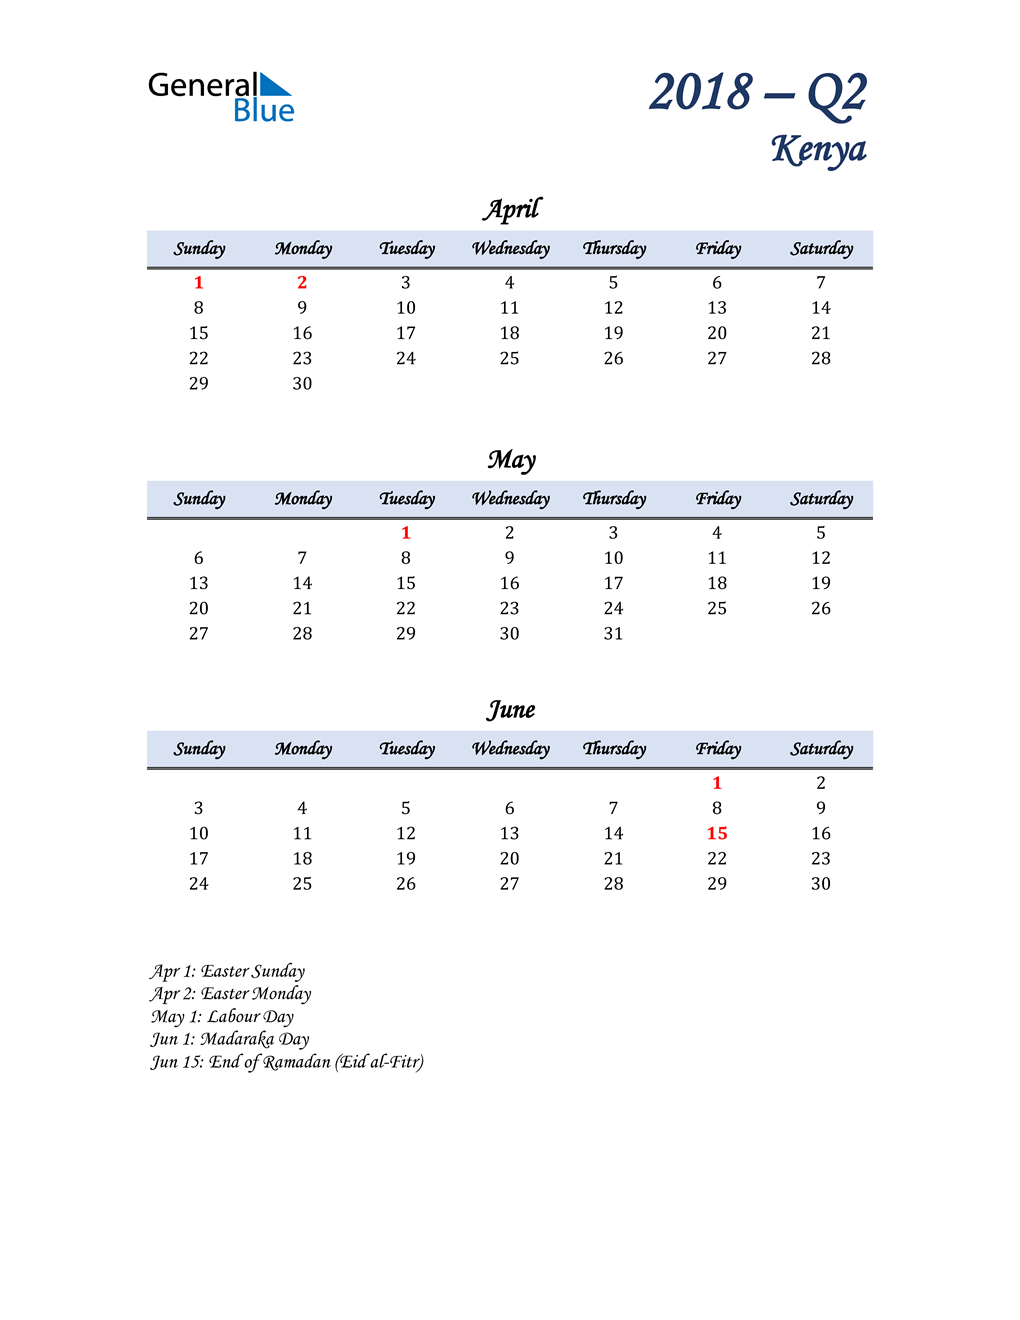  April, May, and June Calendar for Kenya